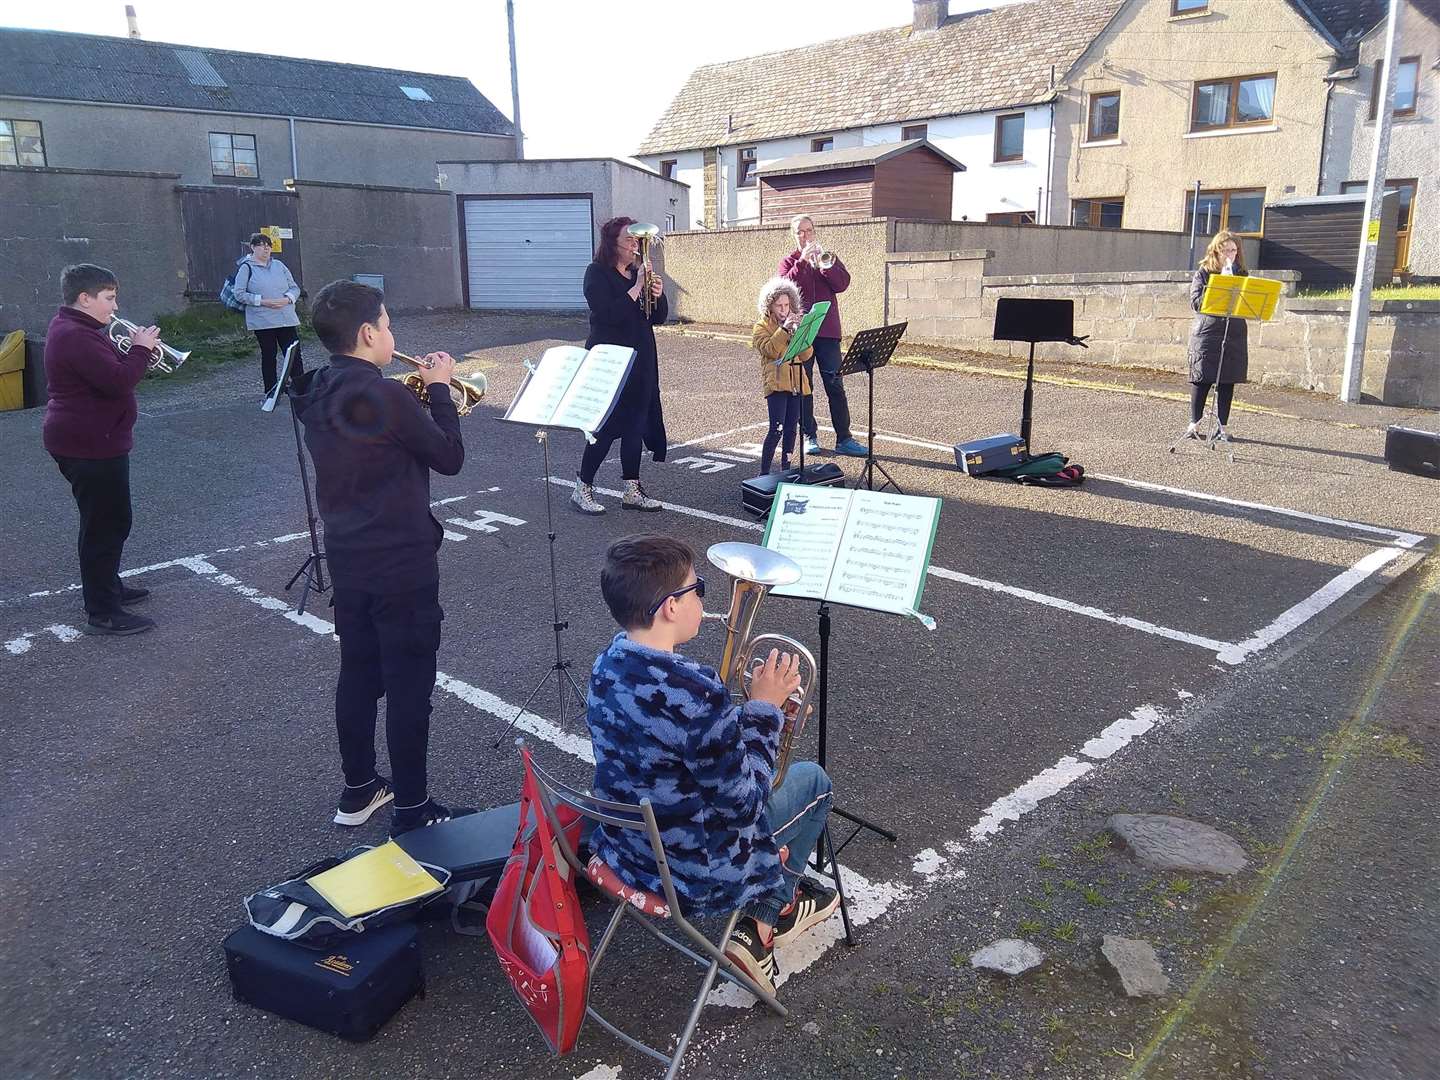 Pentland Brass Band junior members practising in a car park.